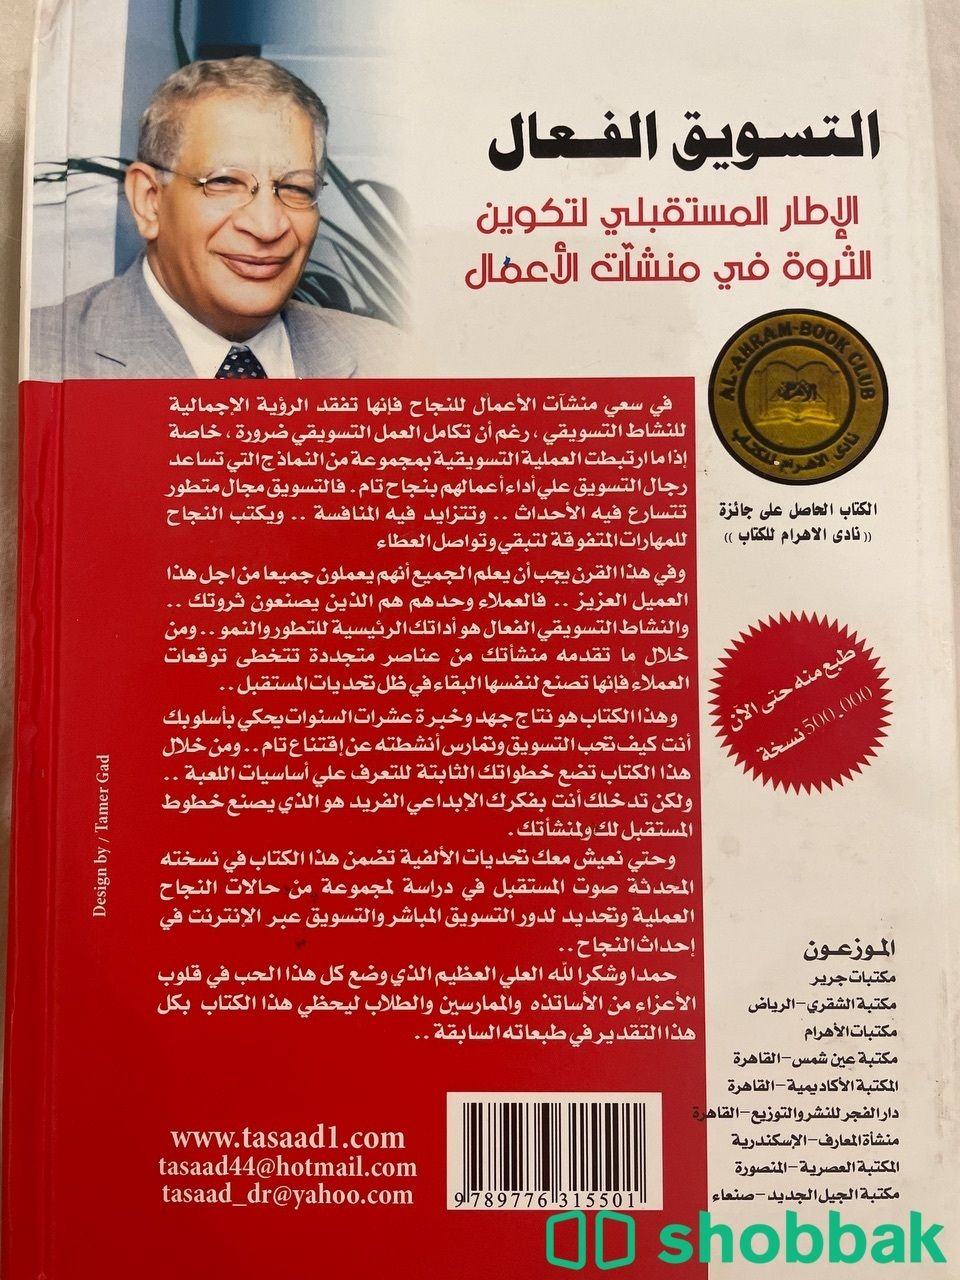 كتاب التسويق الفعال  Shobbak Saudi Arabia